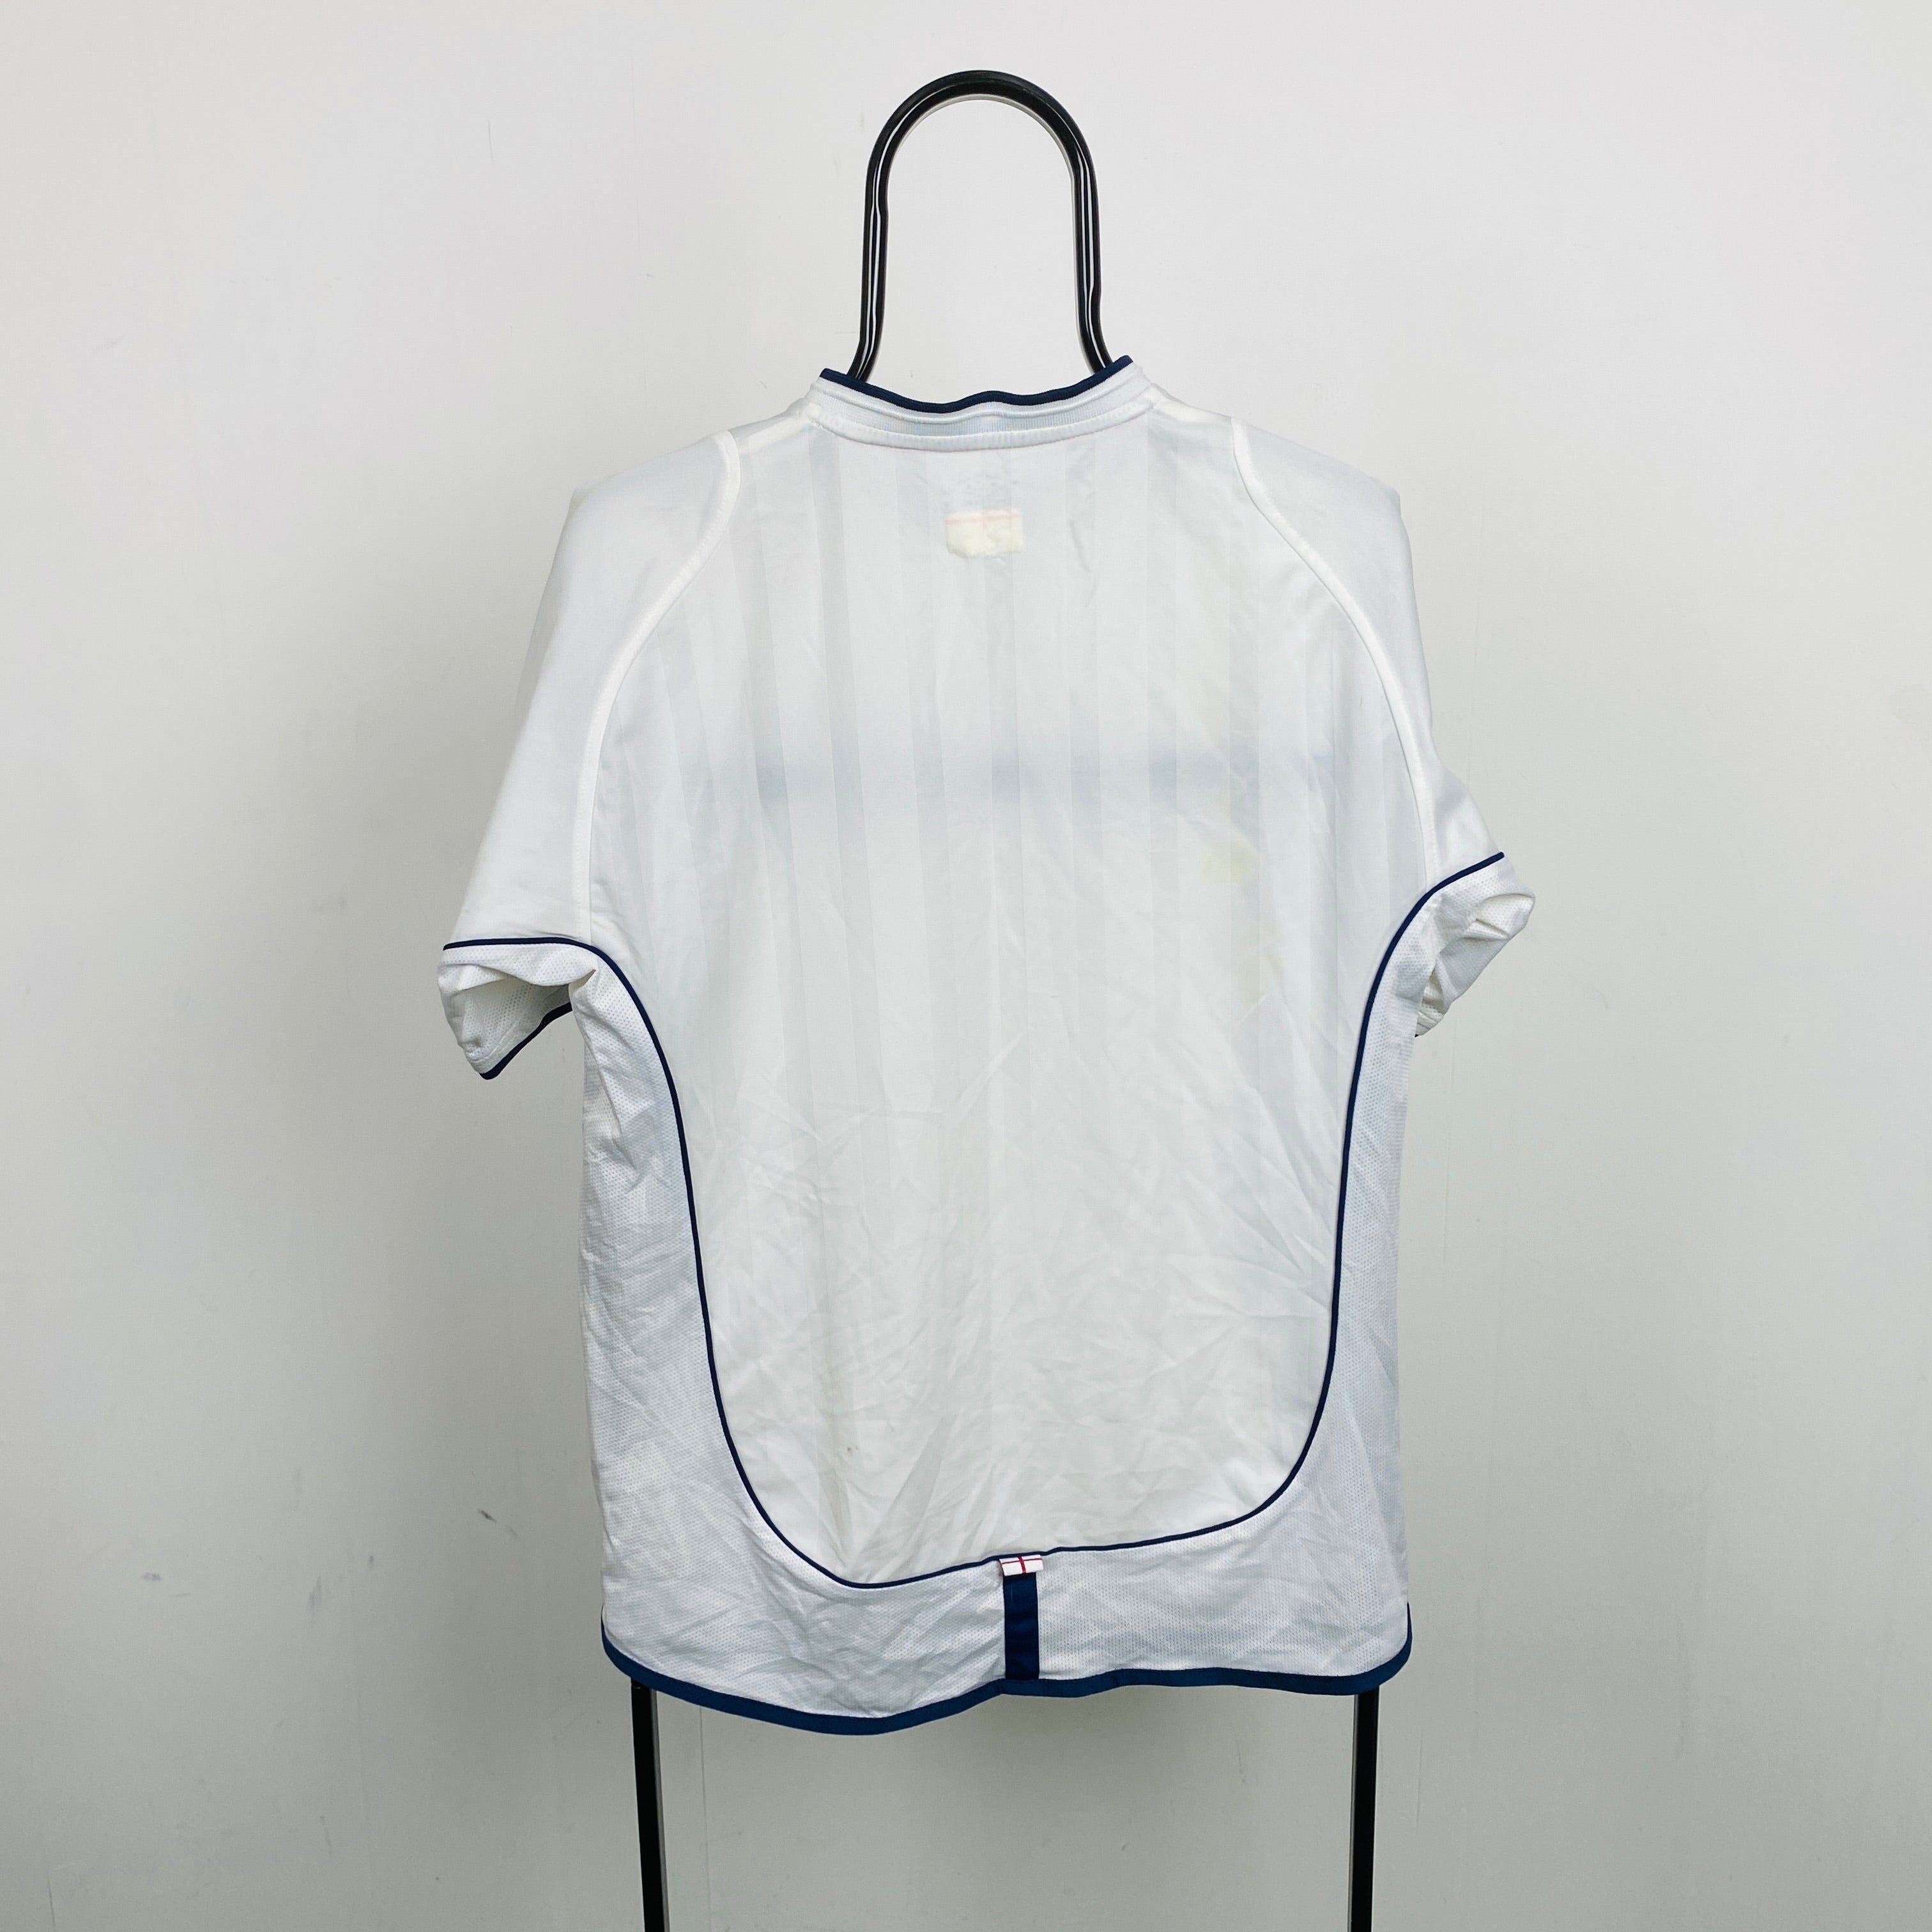 Retro Umbro England Football Shirt T-Shirt White Medium